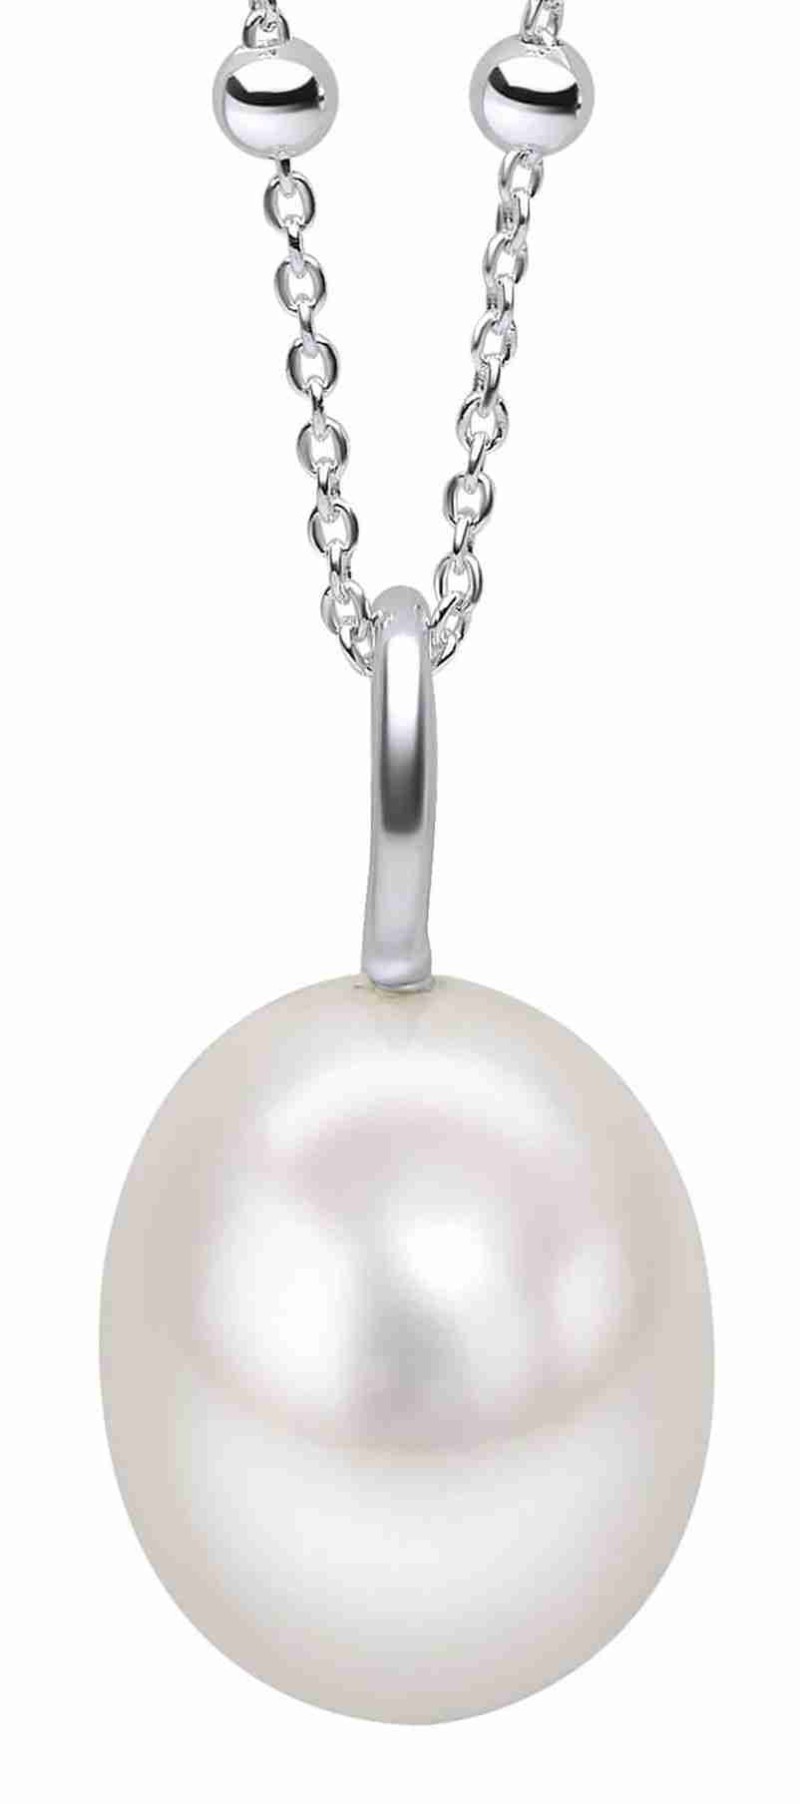 Mon-bijou - D5403a - Collier perle en argent 925